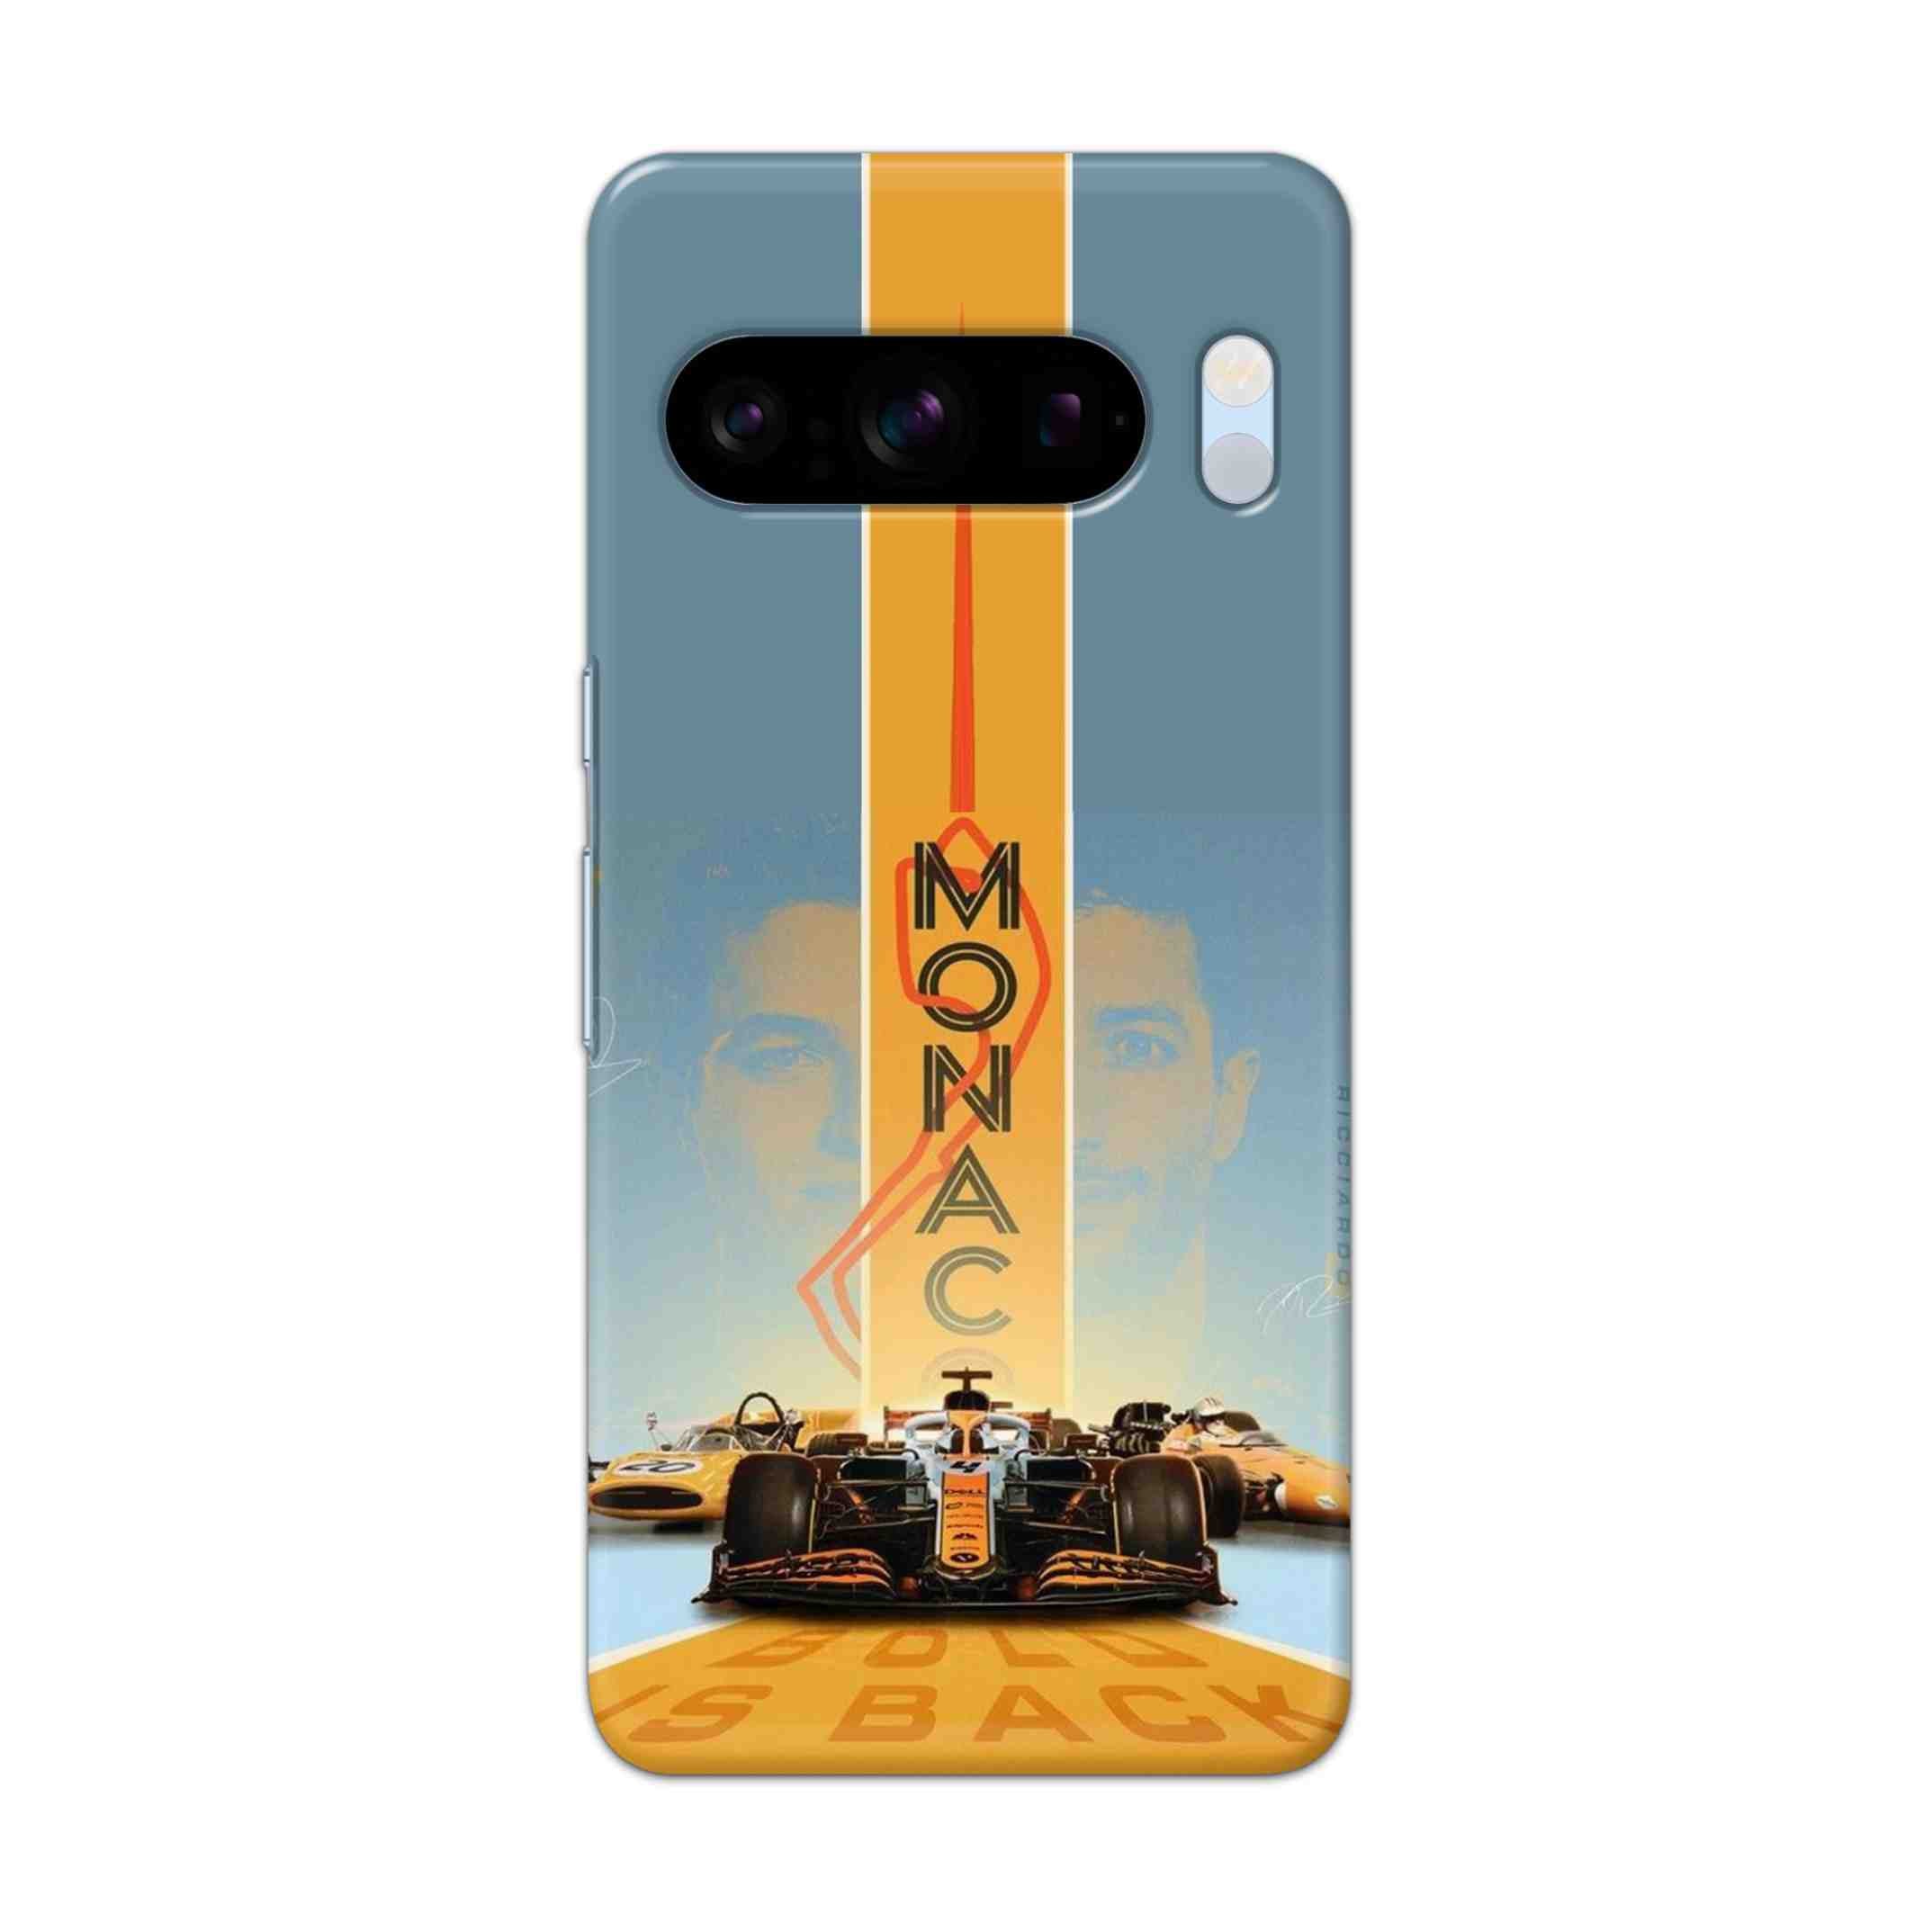 Buy Monac Formula Hard Back Mobile Phone Case/Cover For Pixel 8 Pro Online